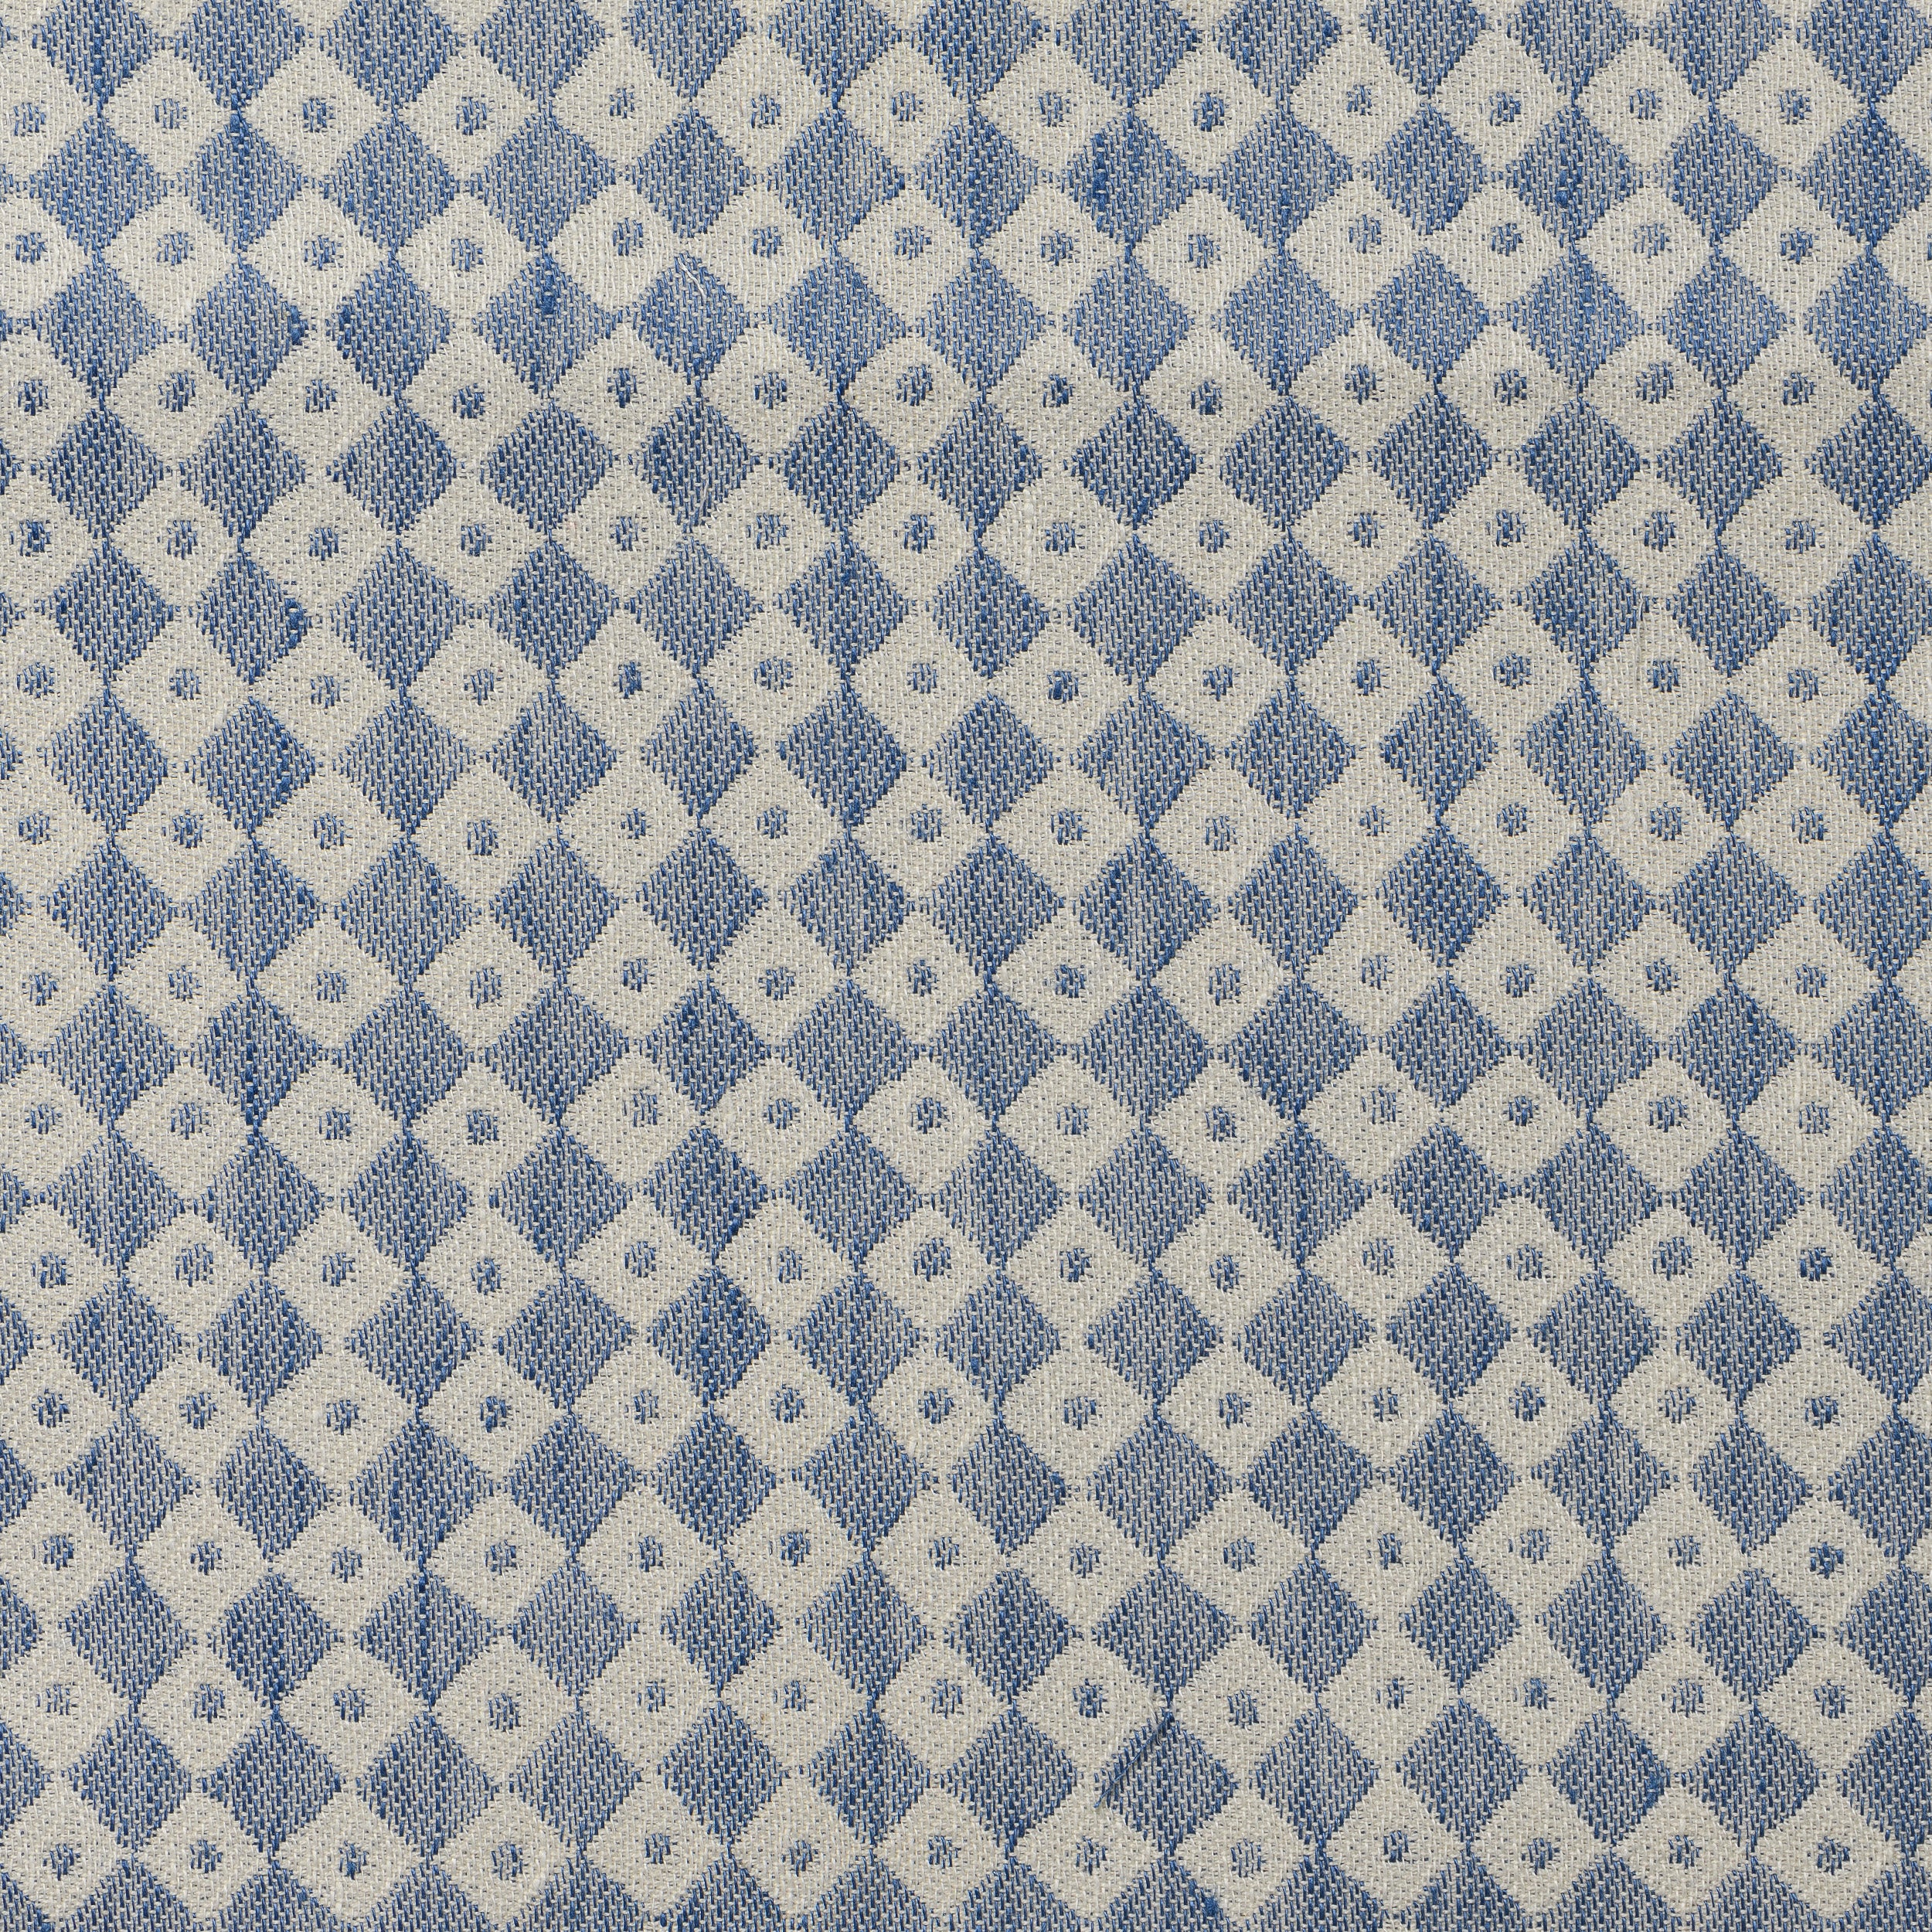 Joy of Print X Tori Murphy Chequerboard Linen Blend Fabric Indigo